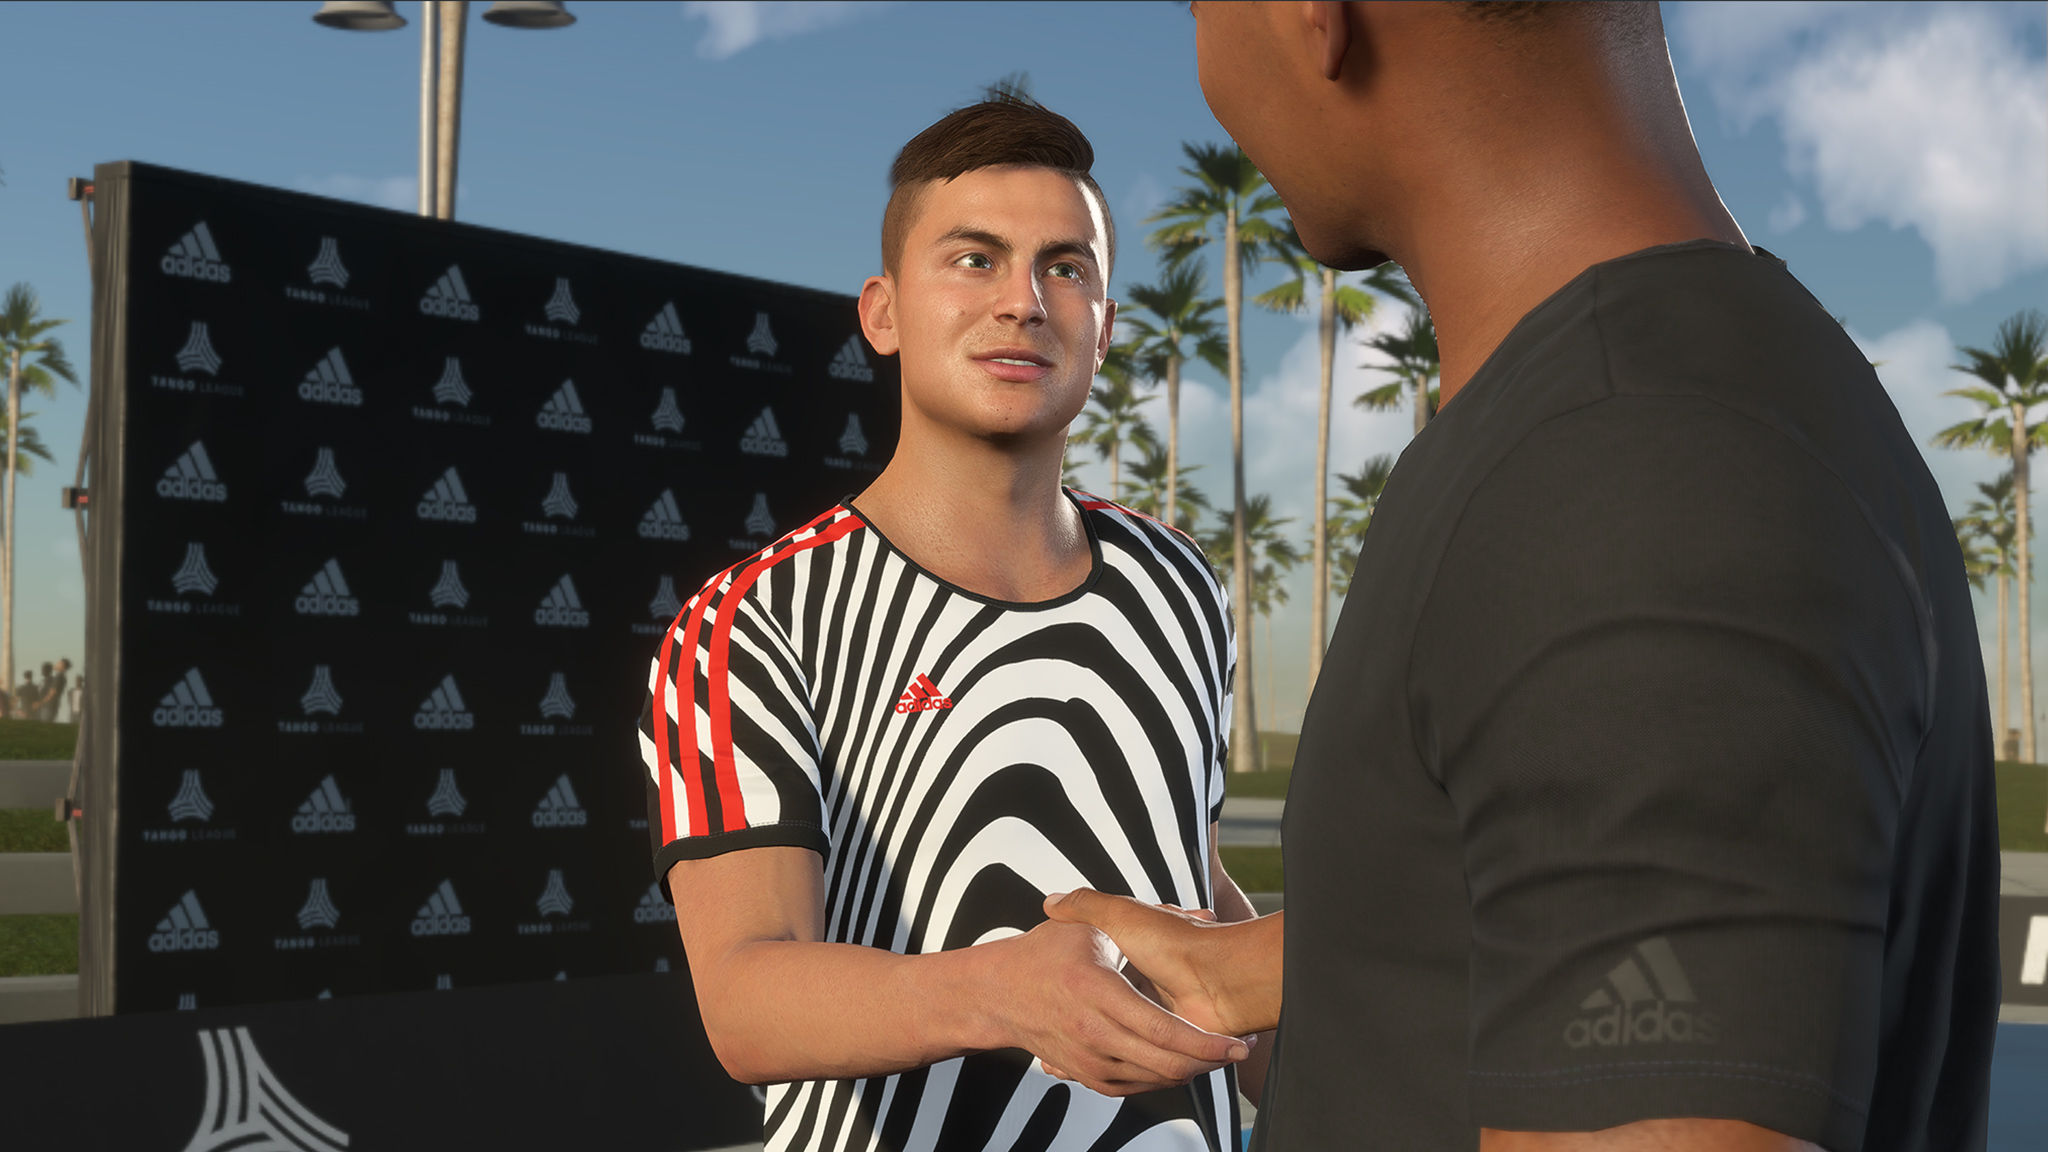 《FIFA19》 新增改动图文详解 玩法模式技巧心得总结